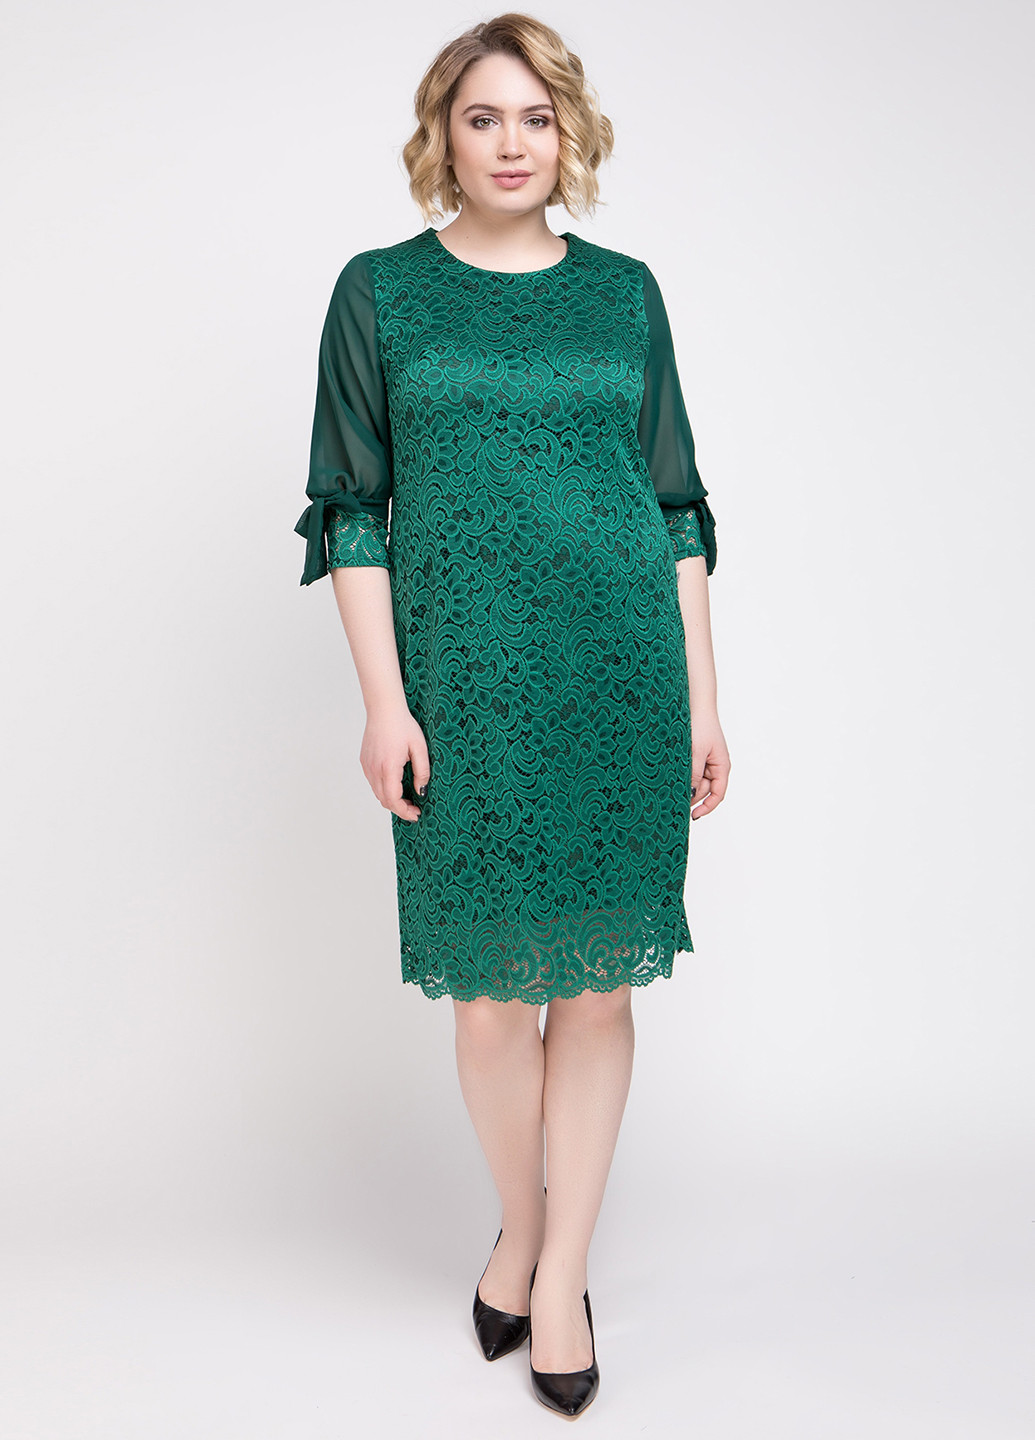 Бутылочное зеленое кэжуал платье A'll Posa однотонное